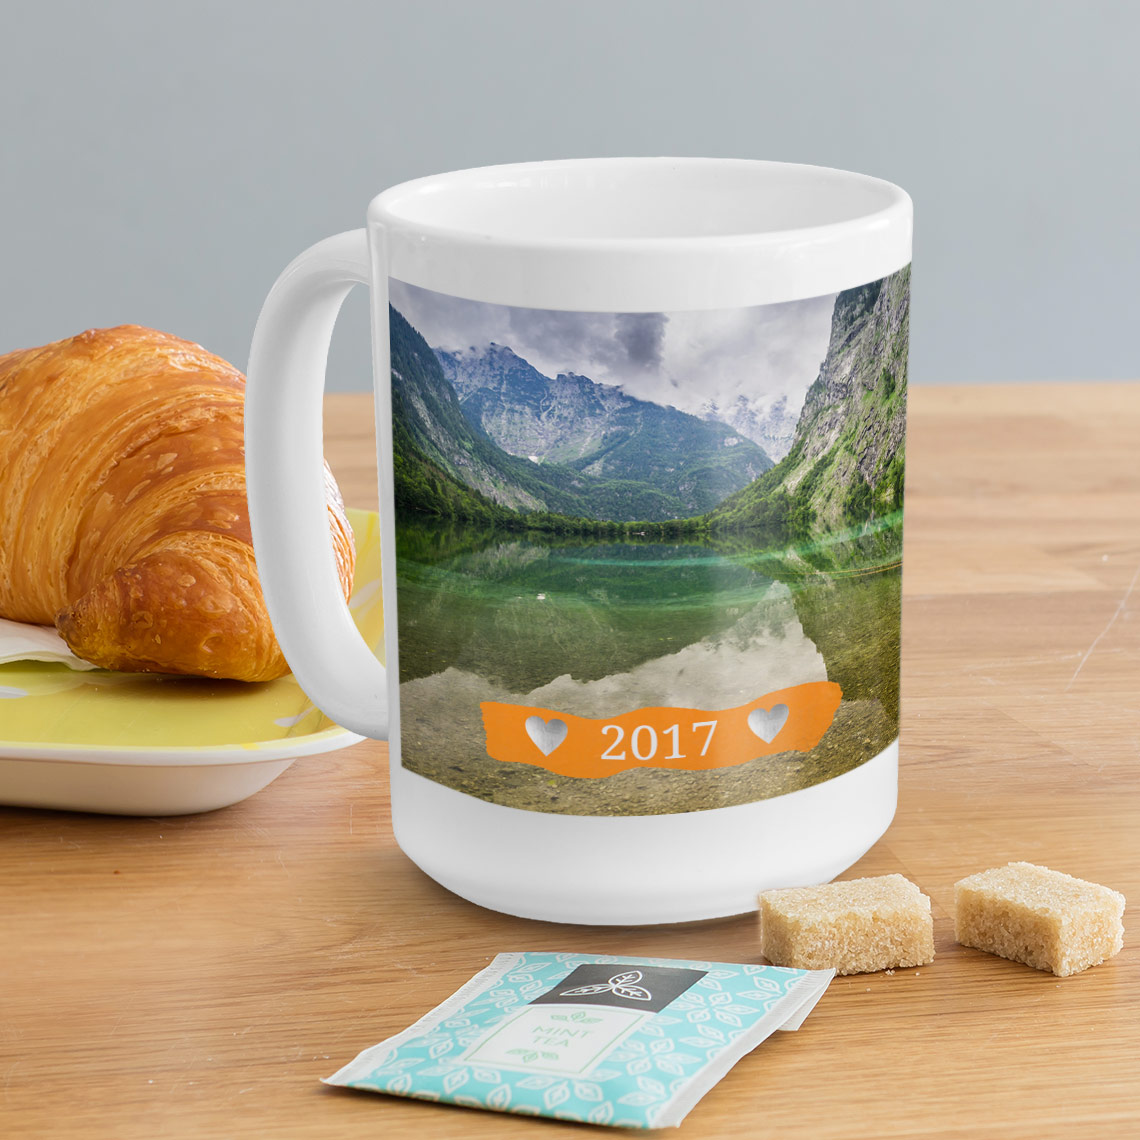 Grand mug personnalisé : votre photo sur un tasse XXL